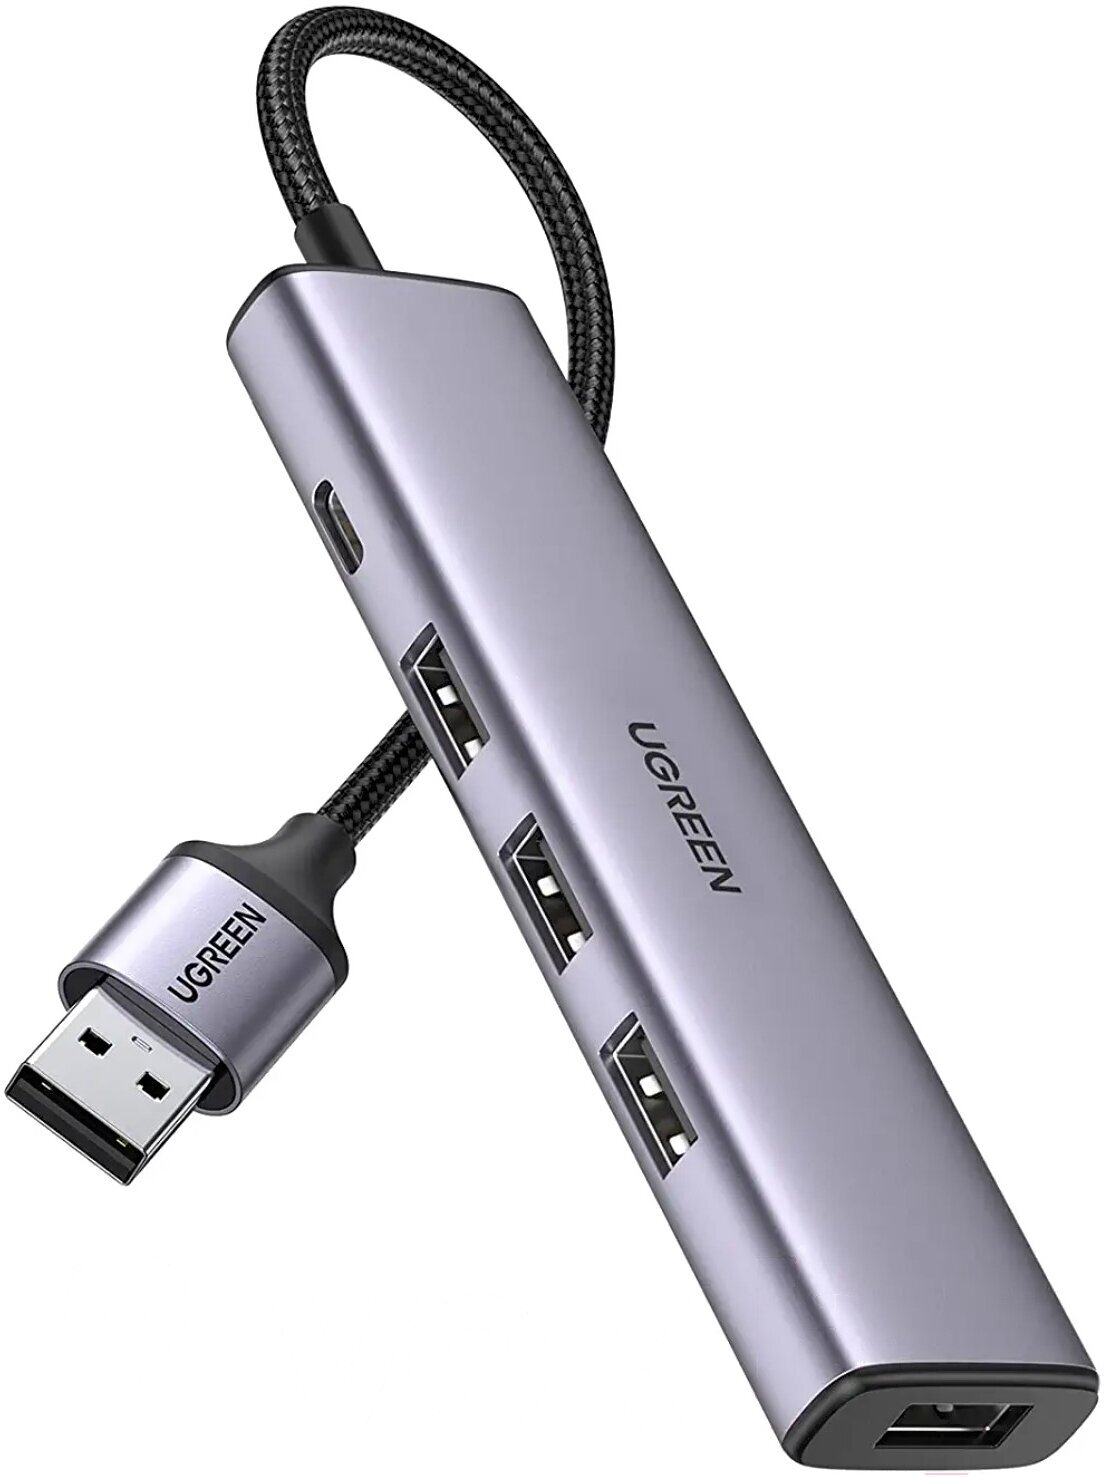 Хаб USB-A 4 в 1 UGREEN CM473 / 4xUSB-A 3.0 / Доп. питание USB-C / цвет серый космос (20805)